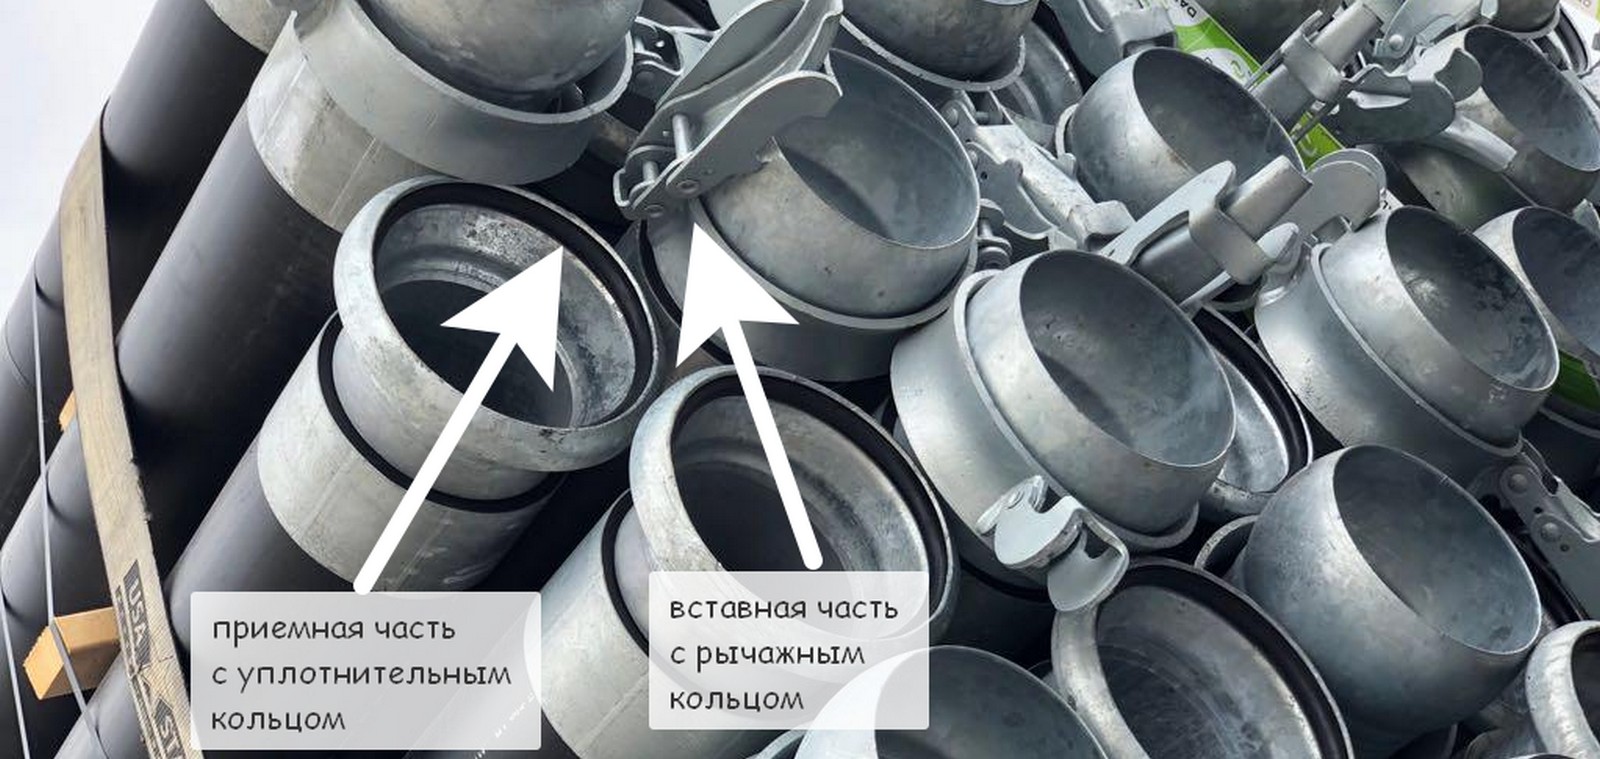 Основные производители на рынке труб пнд в россии